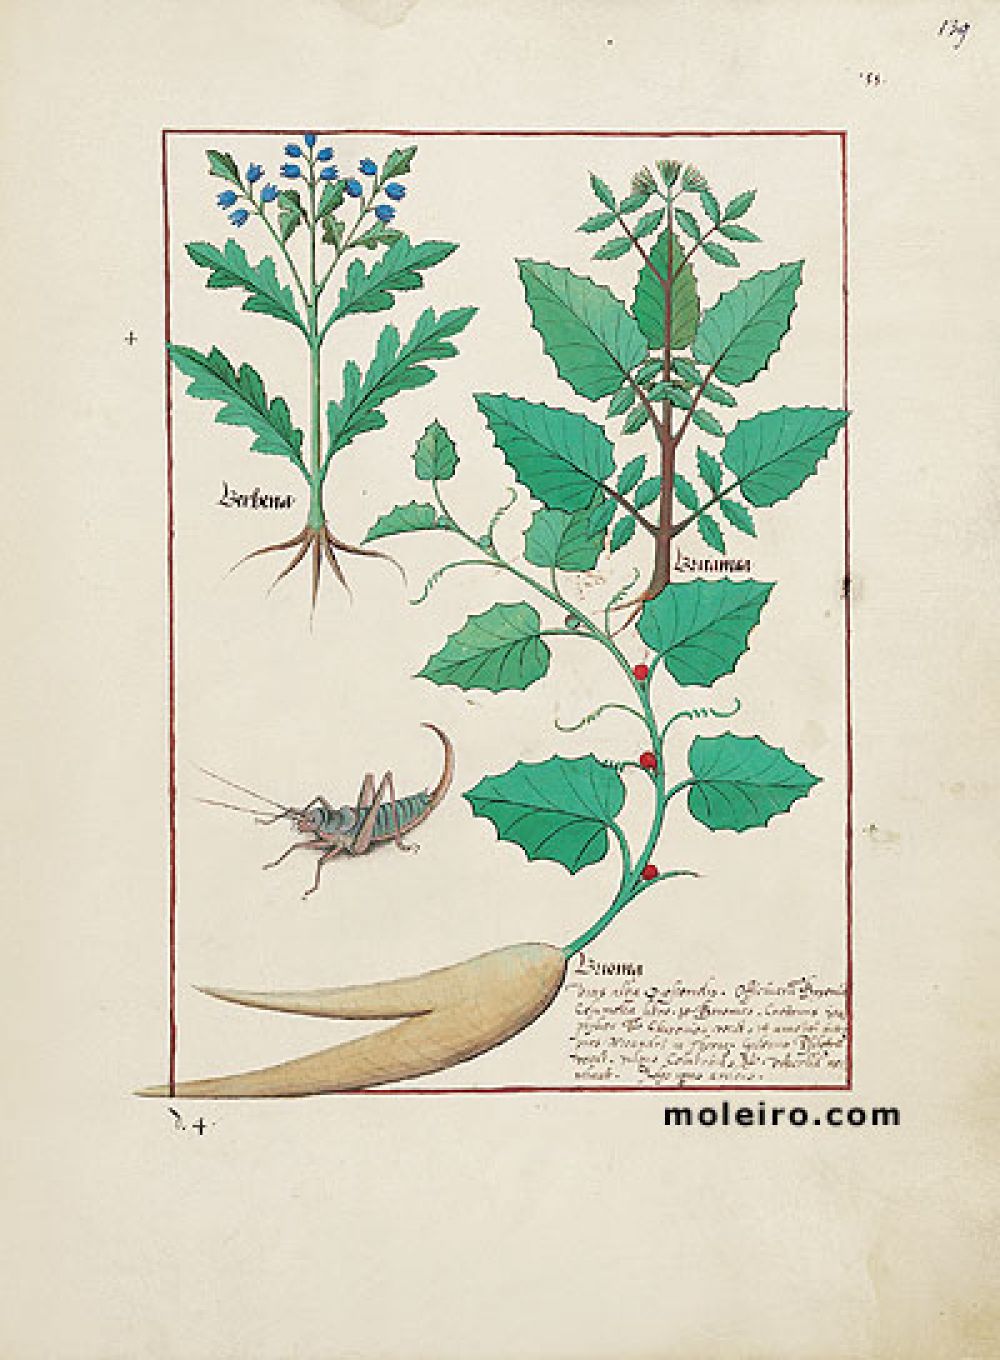 The Book of Simple Medicines folio 139r